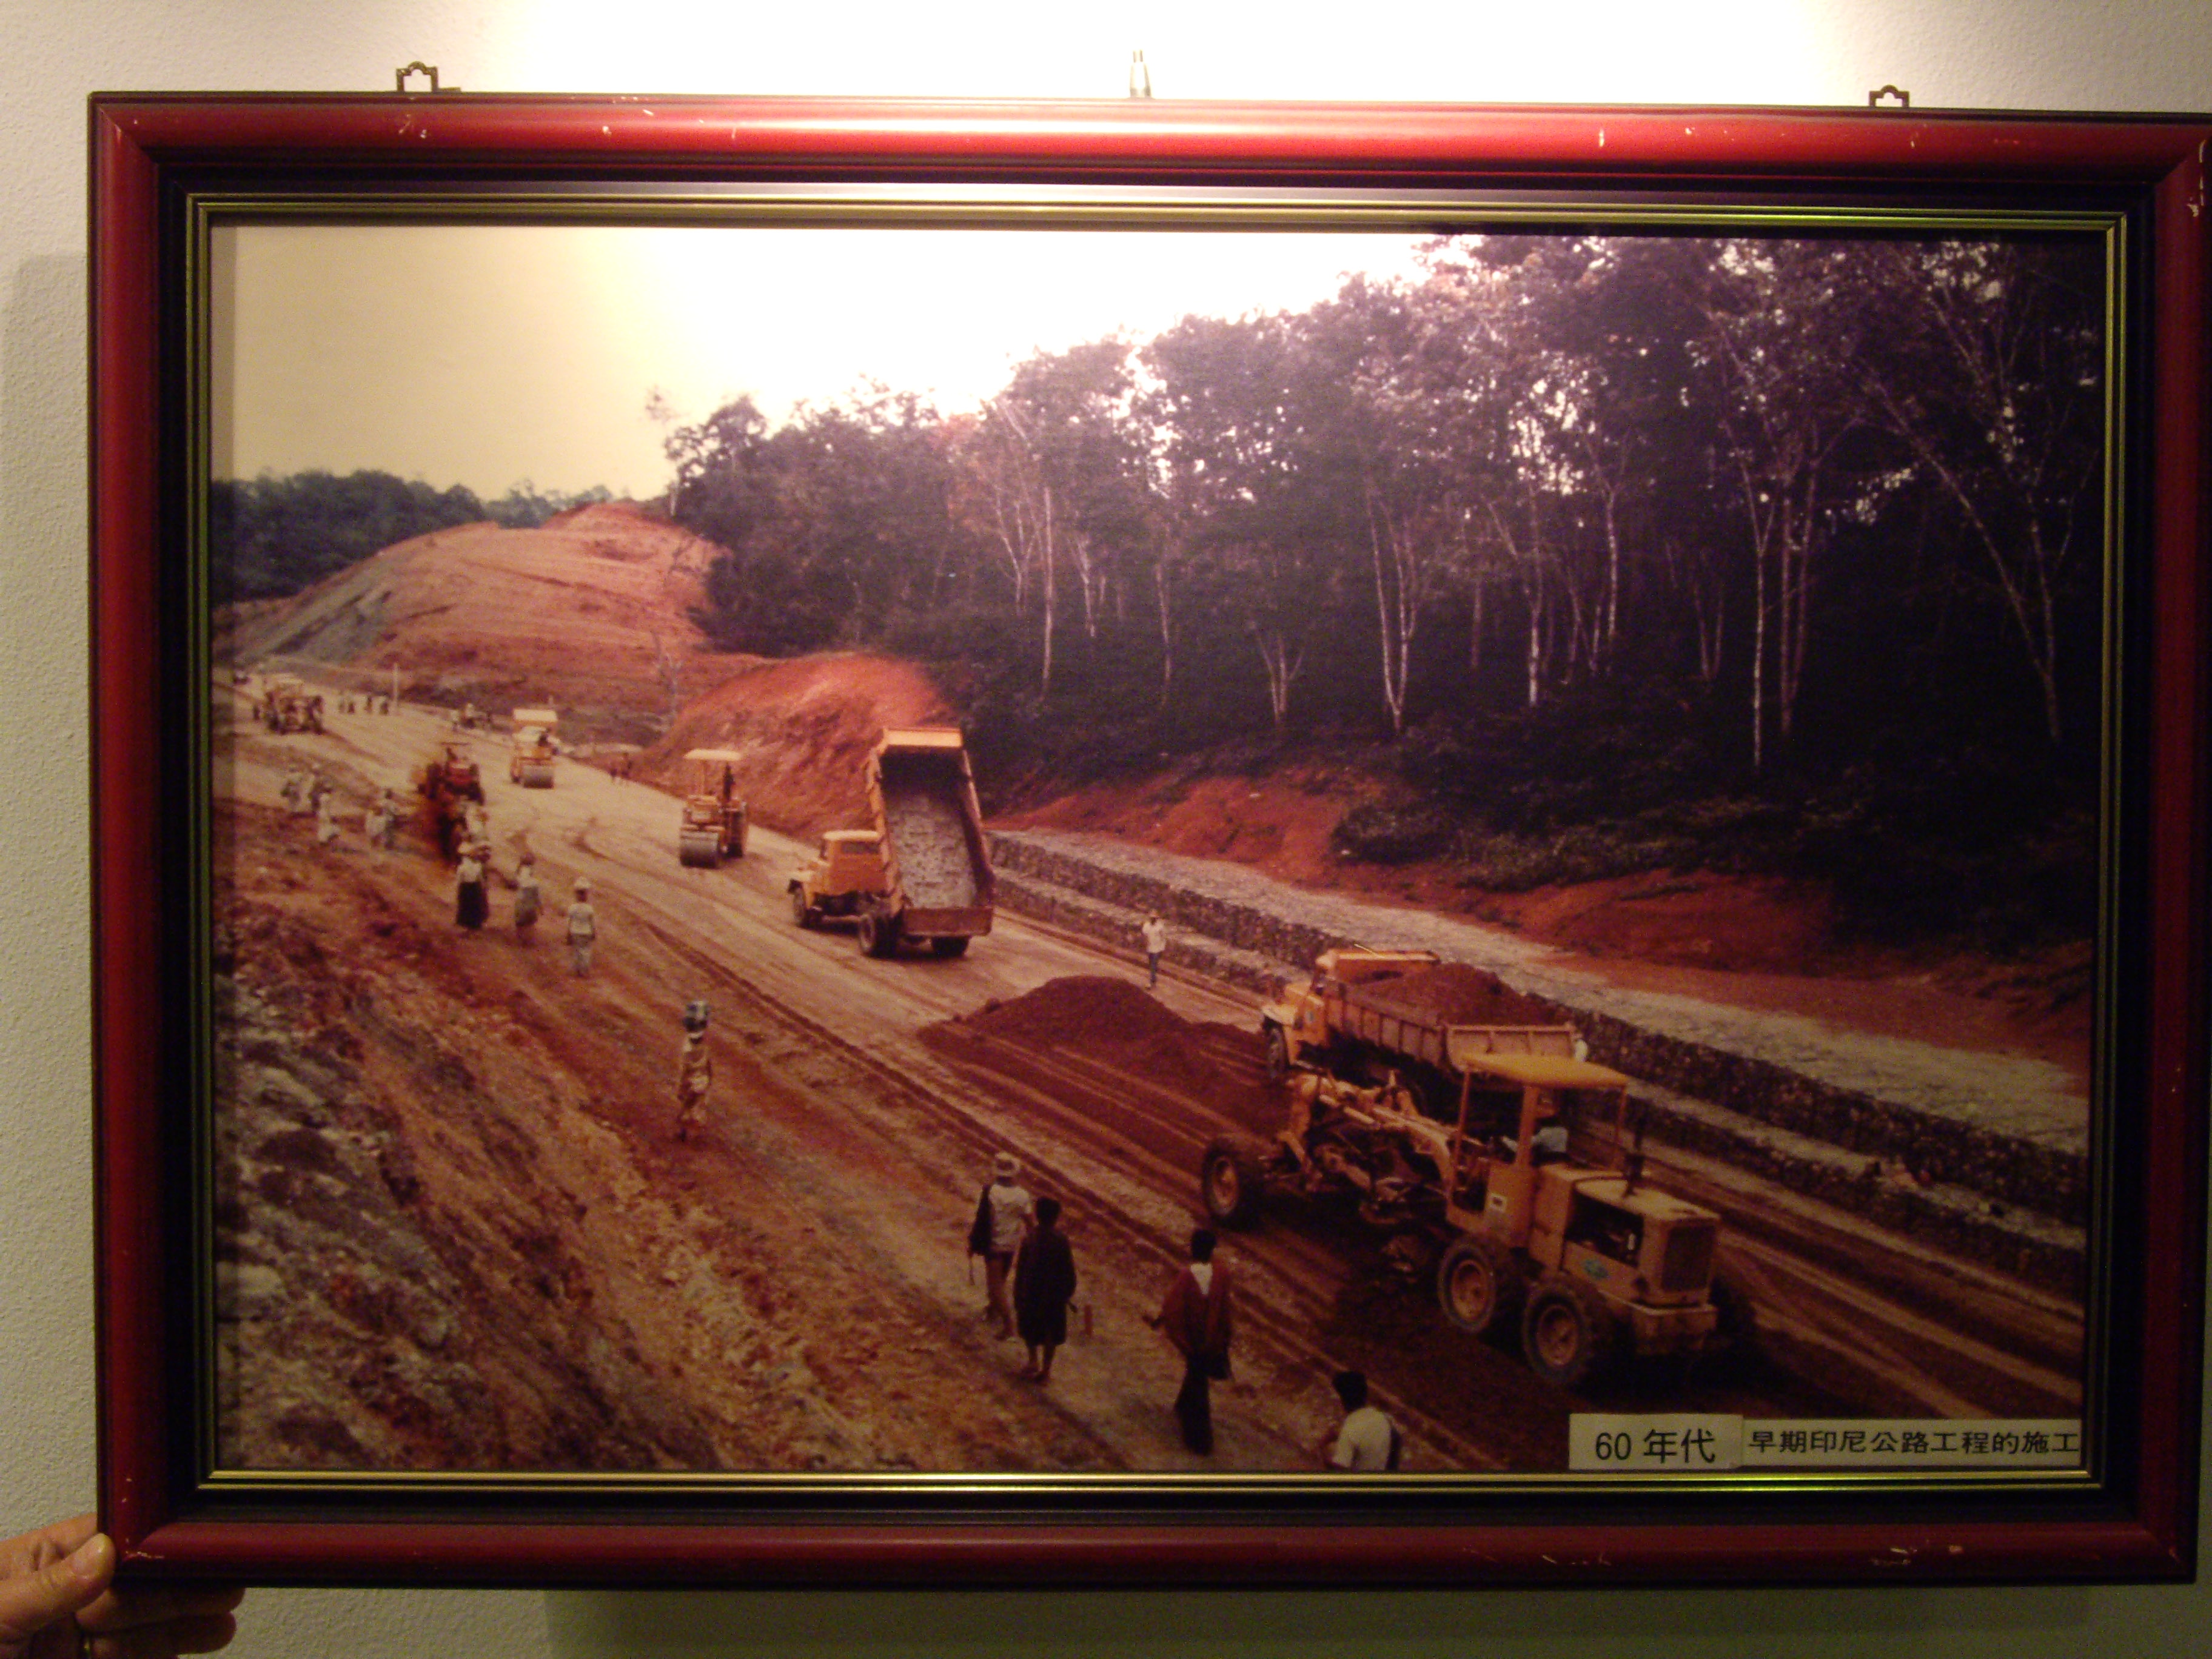 60年代早期印尼公路工程(裱框照)